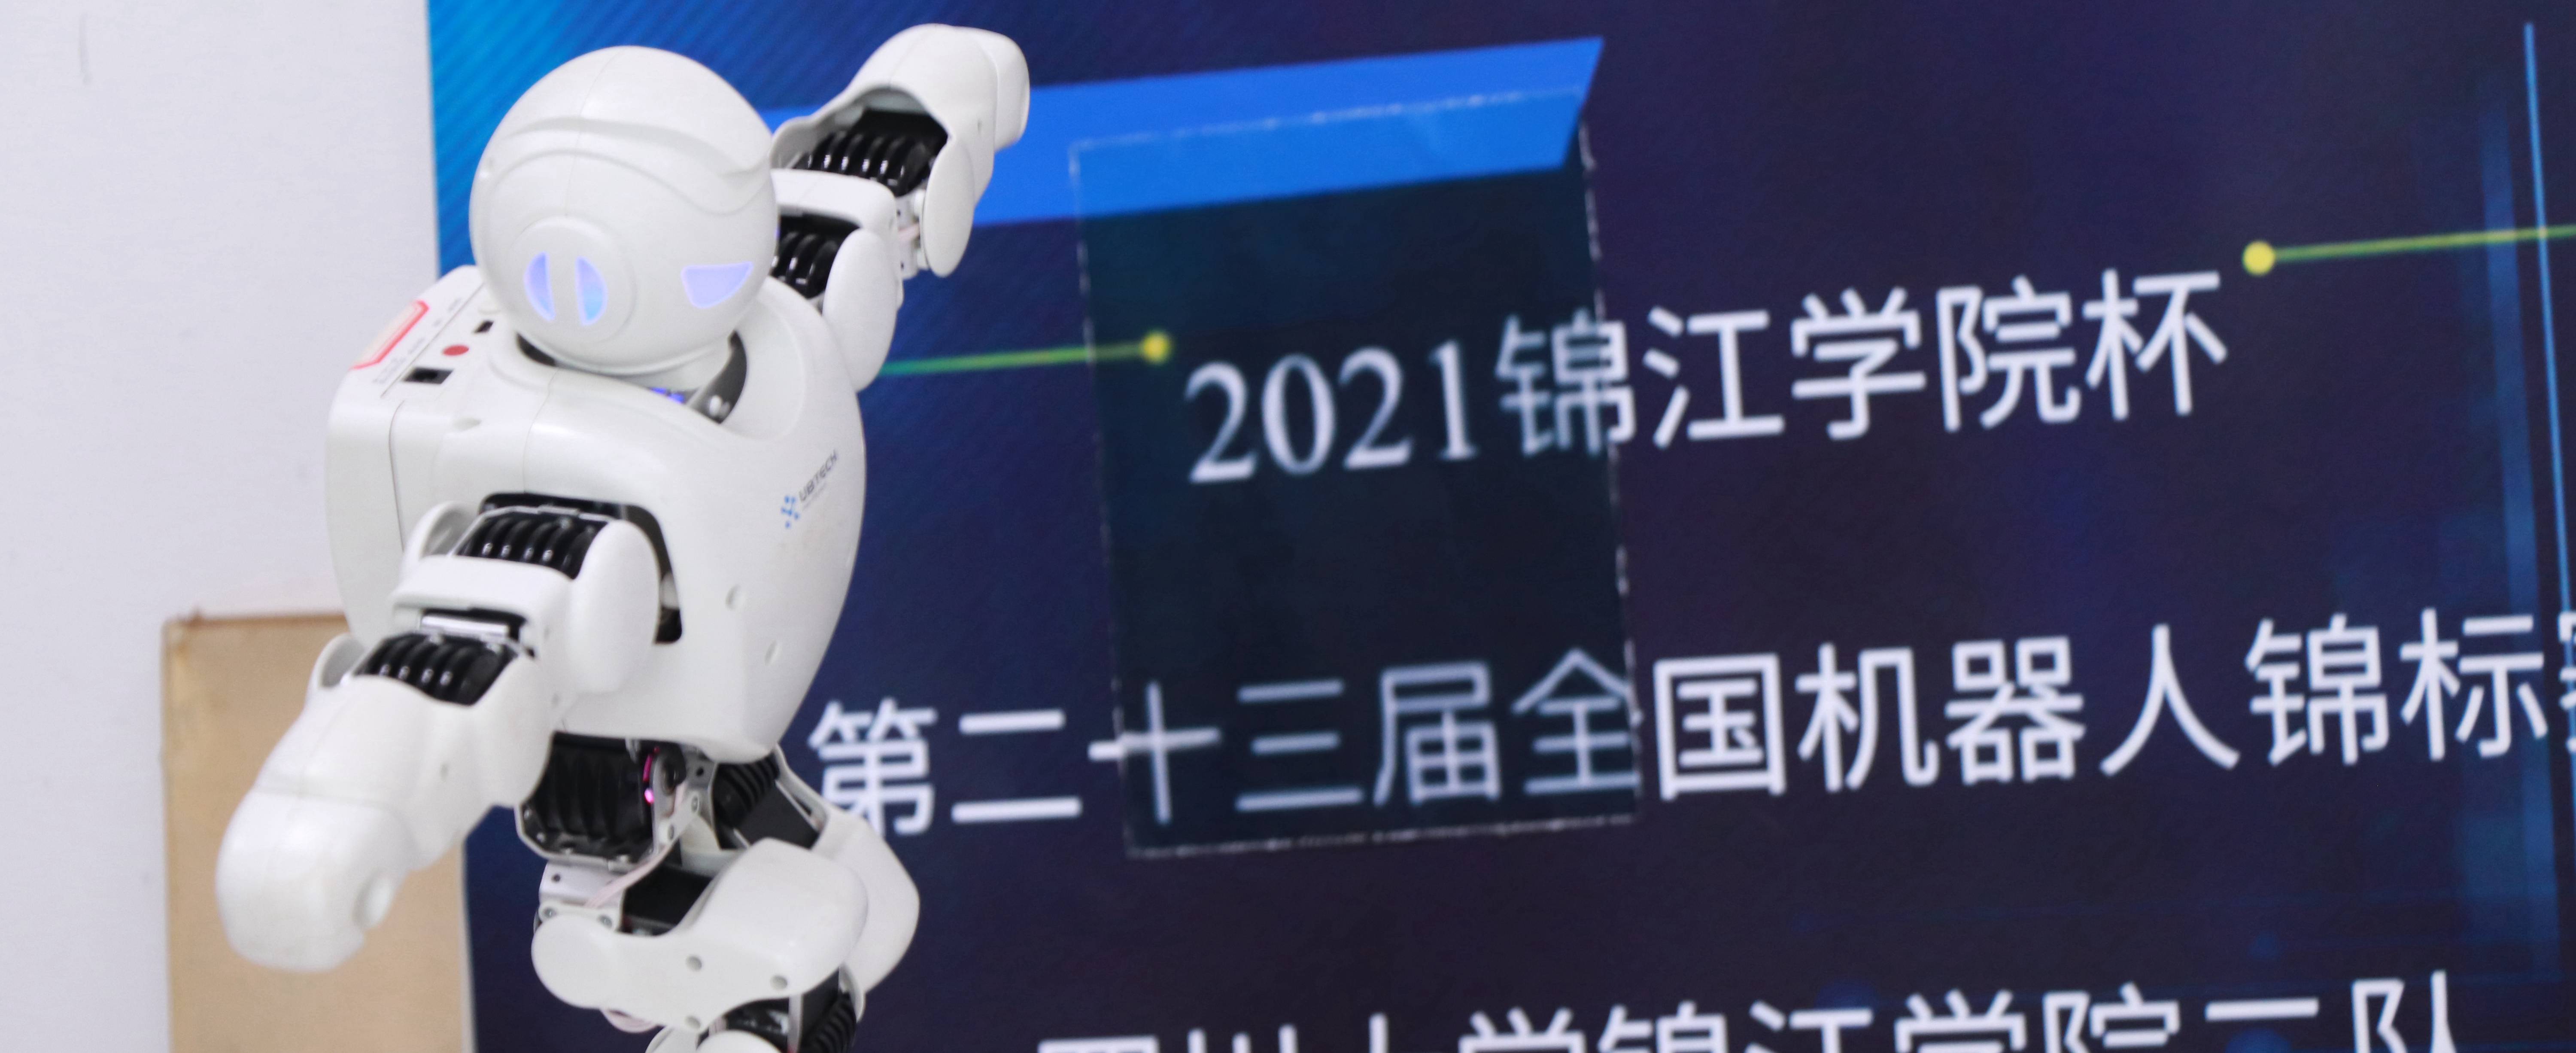 2021锦江学院杯第二十三届全国机器人锦标赛在四川大学锦江学院举行